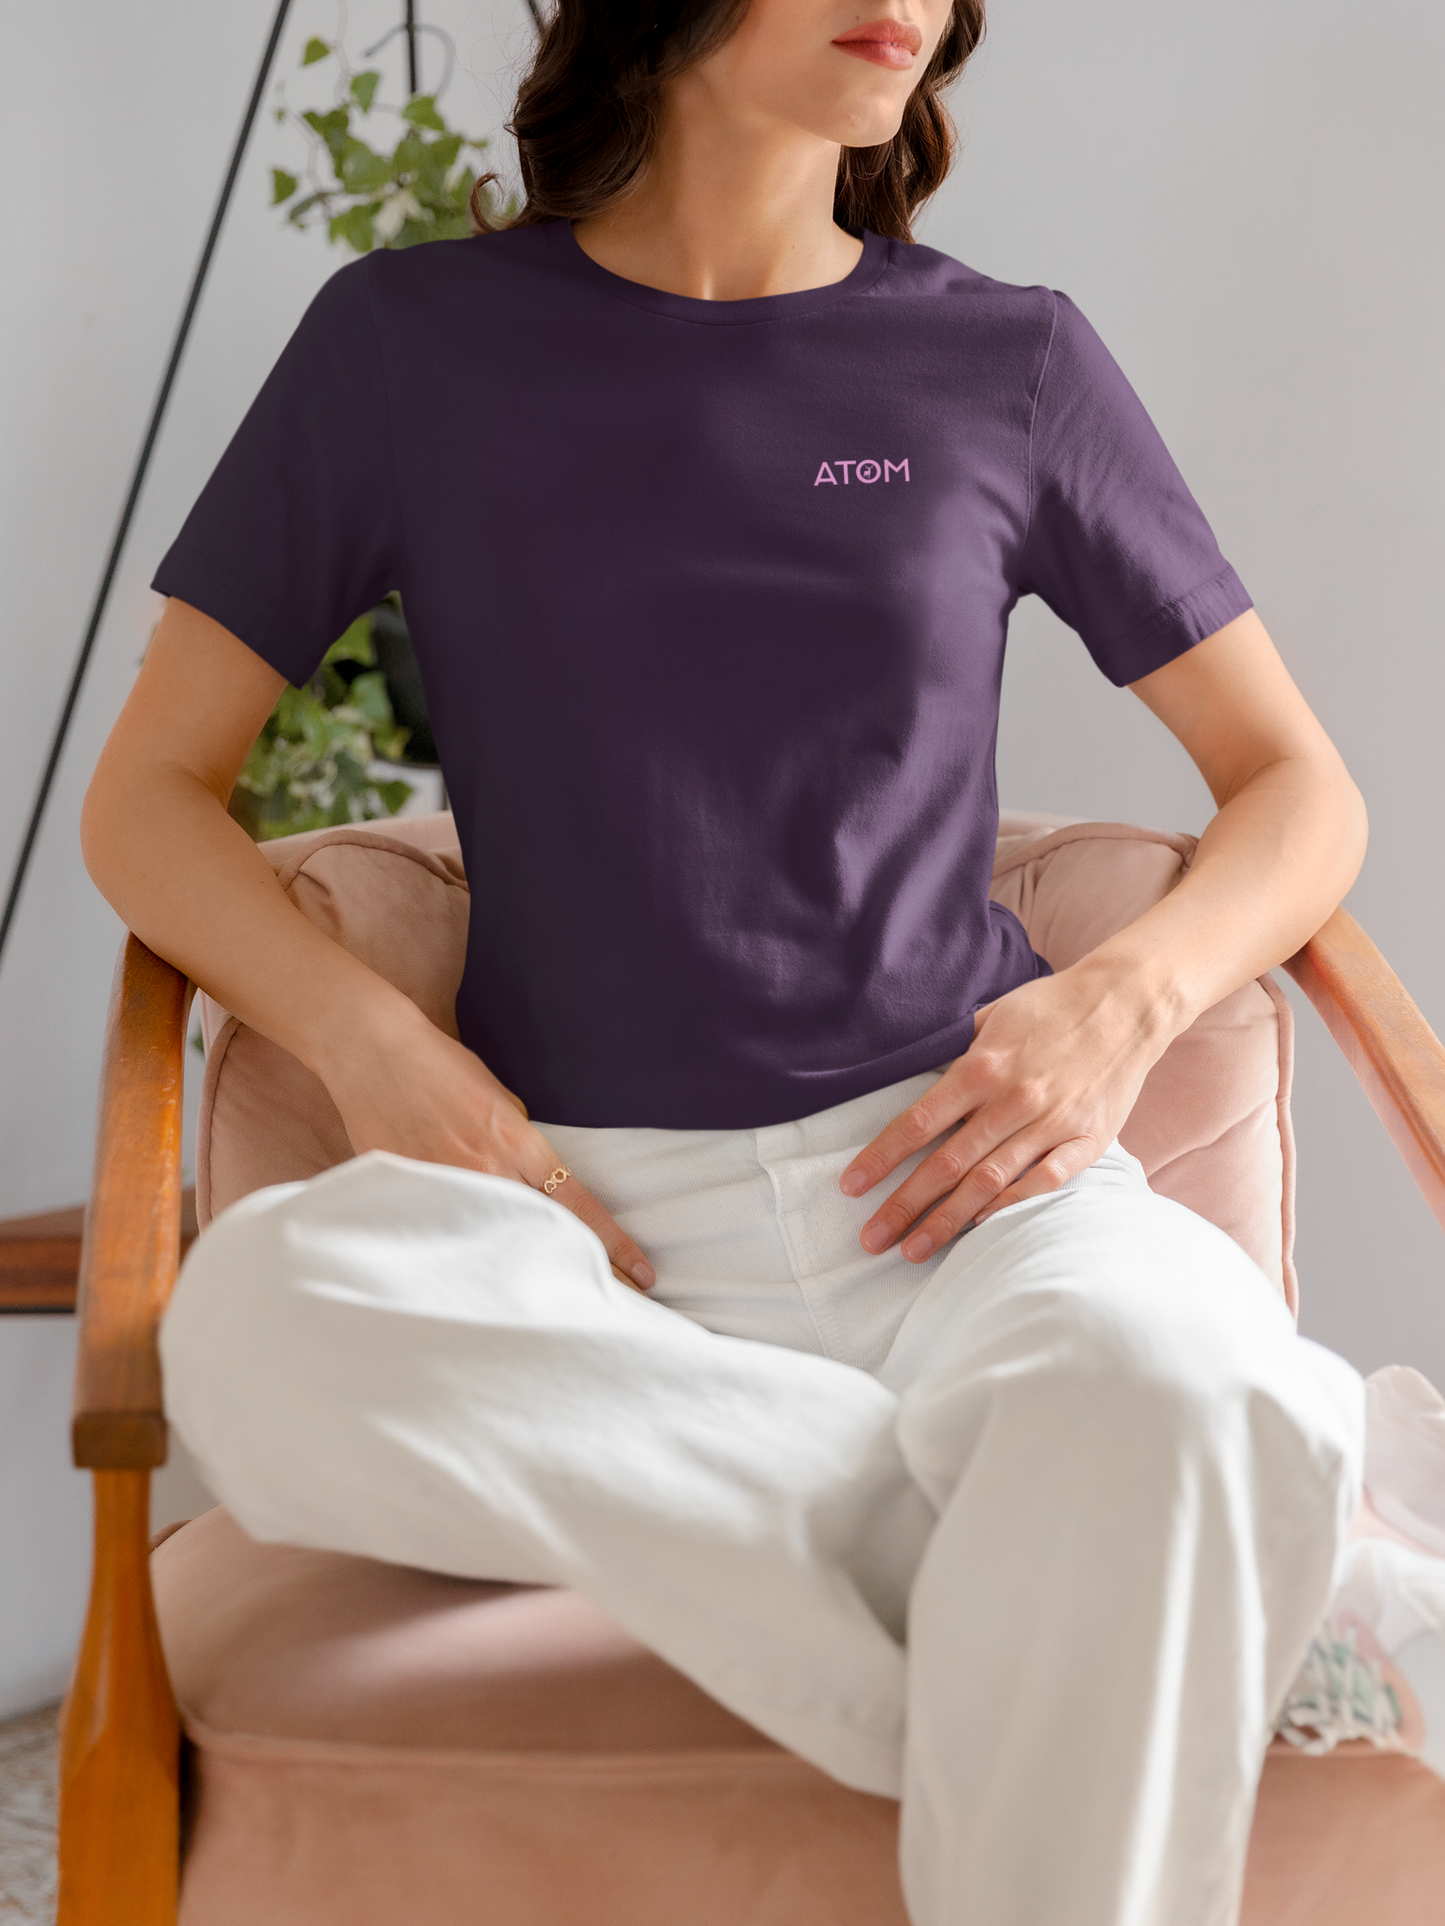 ATOM Logo Basic Purple T-Shirt For Women